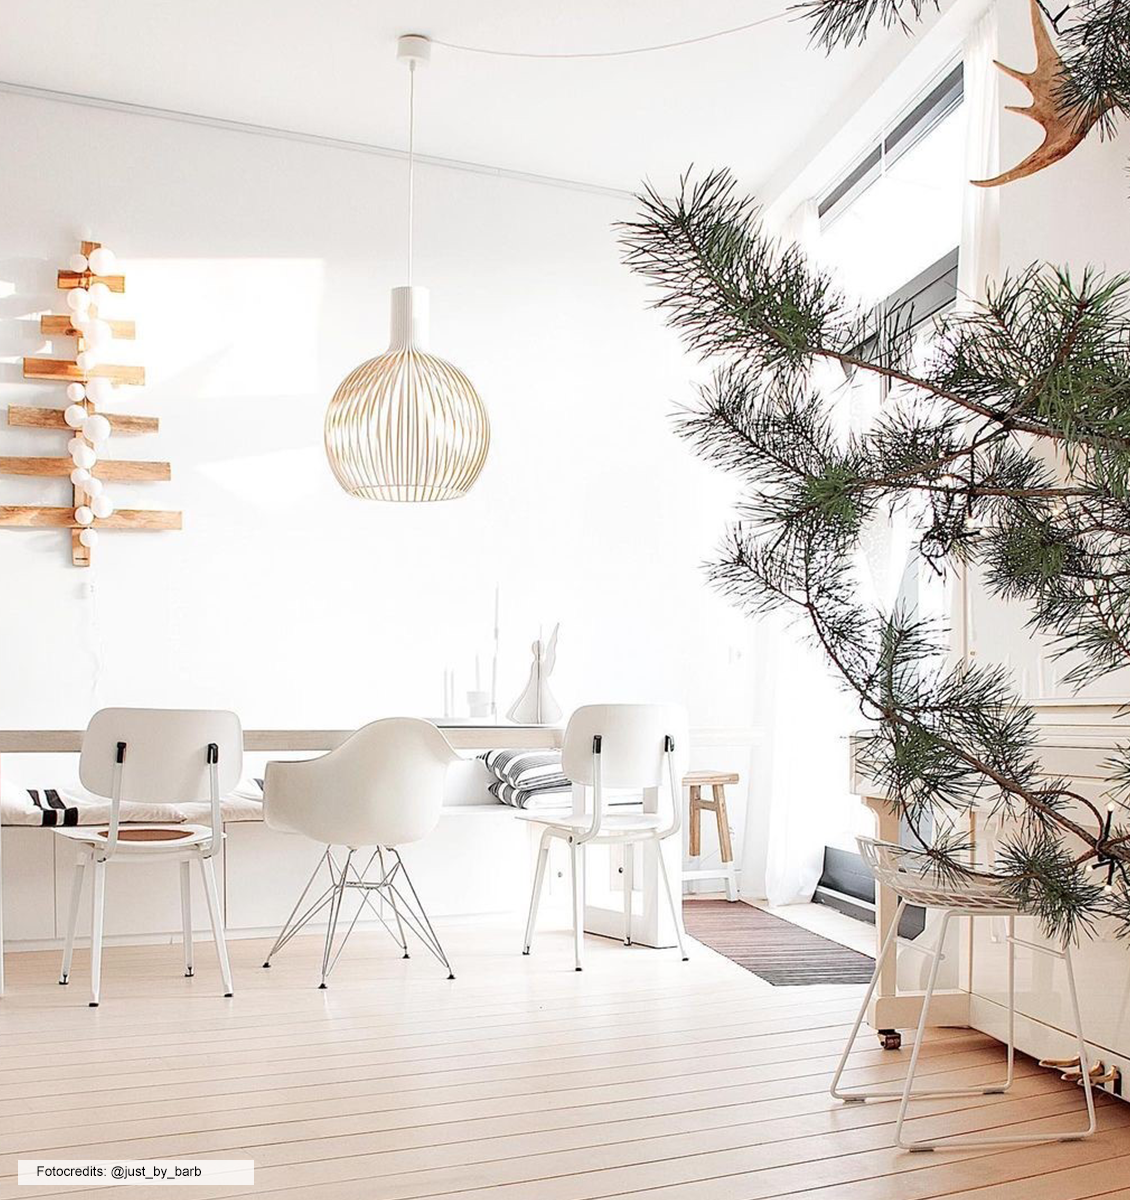 NL houten kerstboom aan wand wit interieur